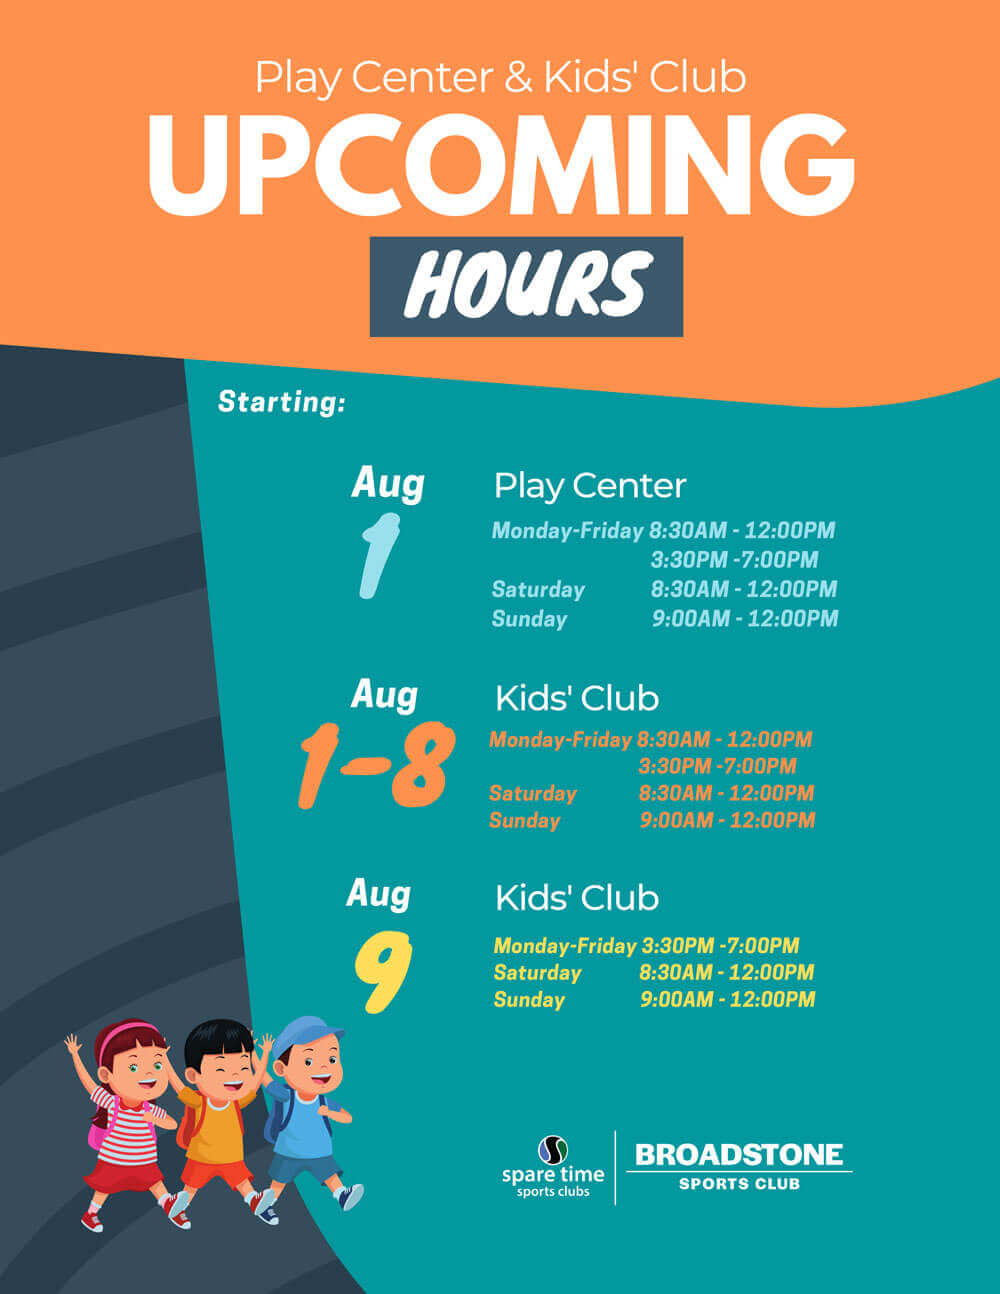 Play center & kids club upcoming hours, Sacramento, CA